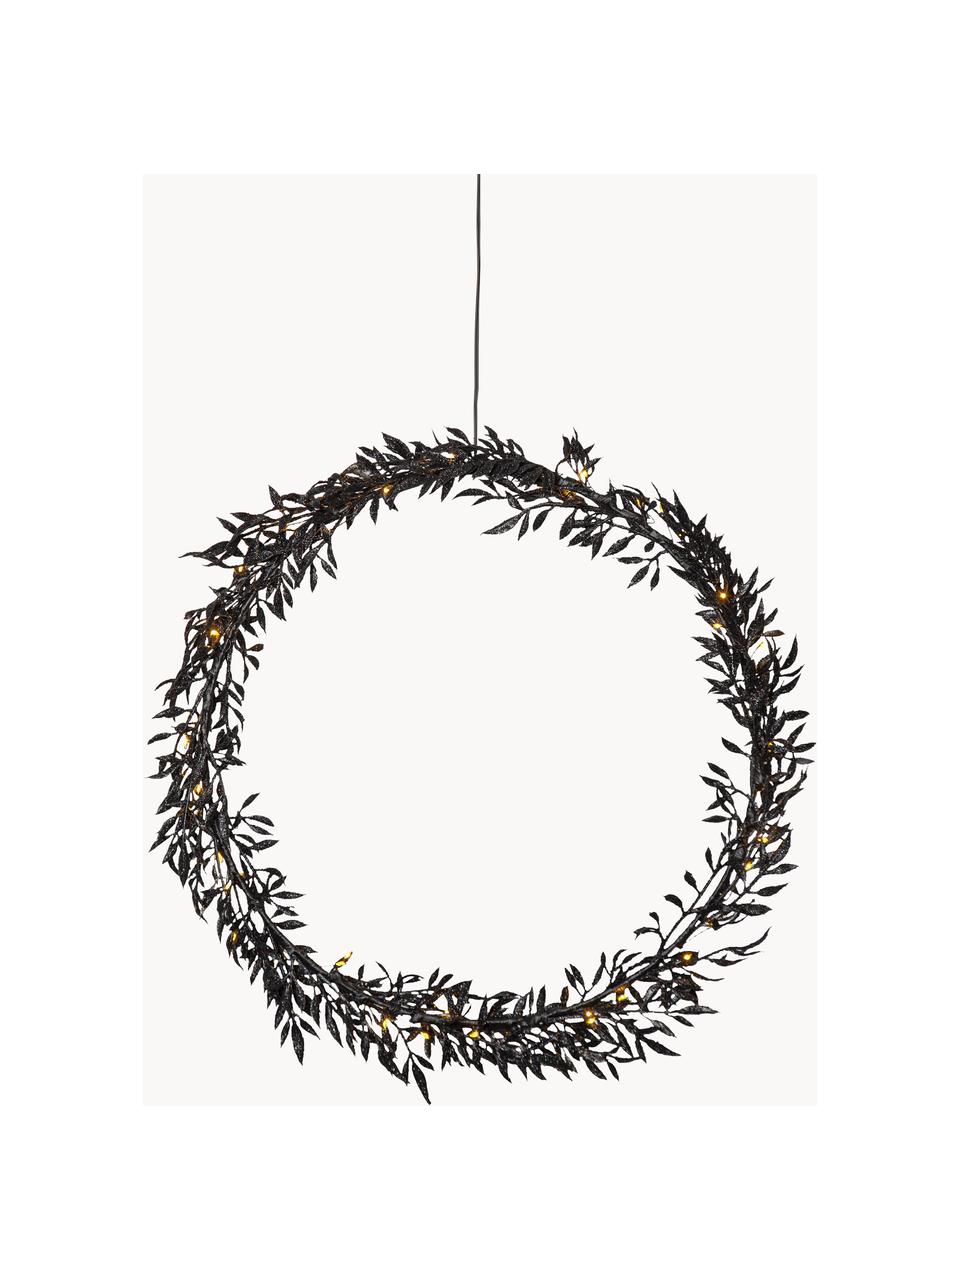 Beleuchteter Weihnachtskranz Elegant mit Timerfunktion, Metall, beschichtet, Schwarz, Ø 44 cm